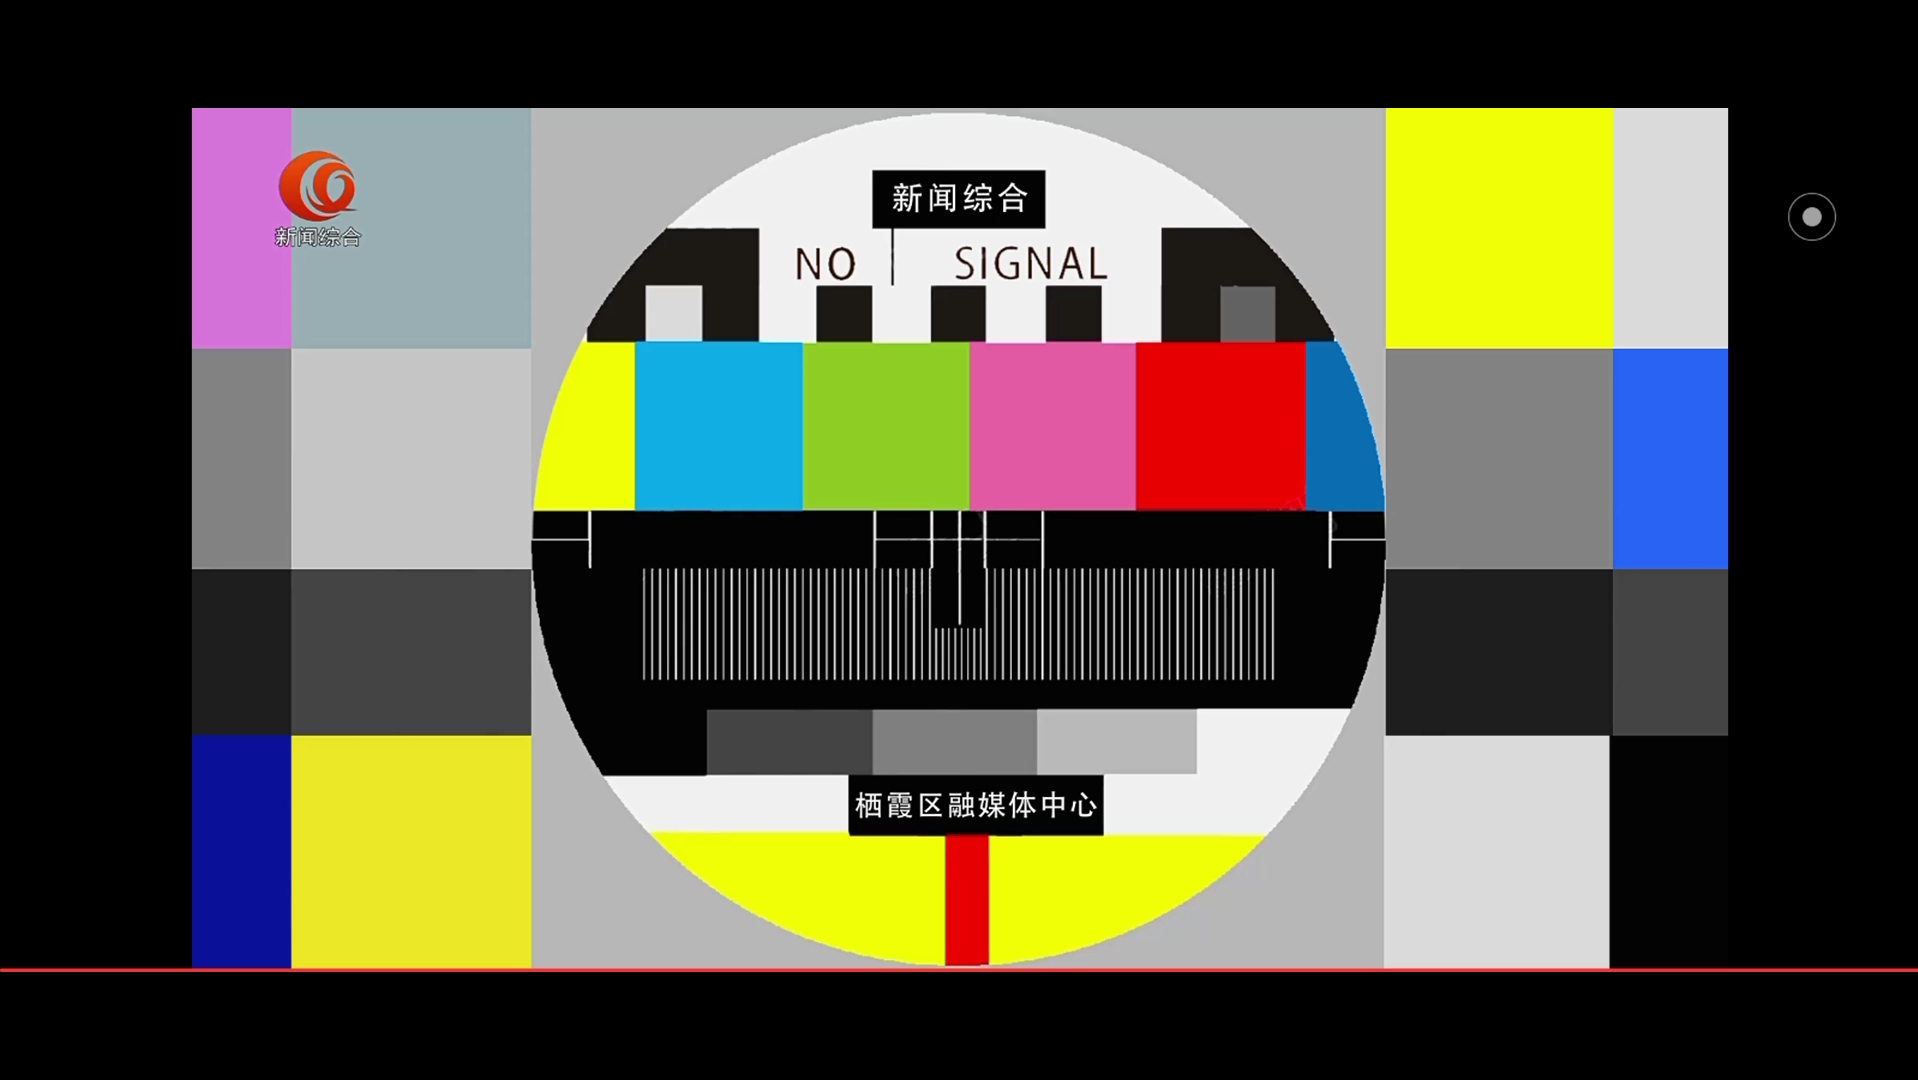 上海电视台测试卡图片